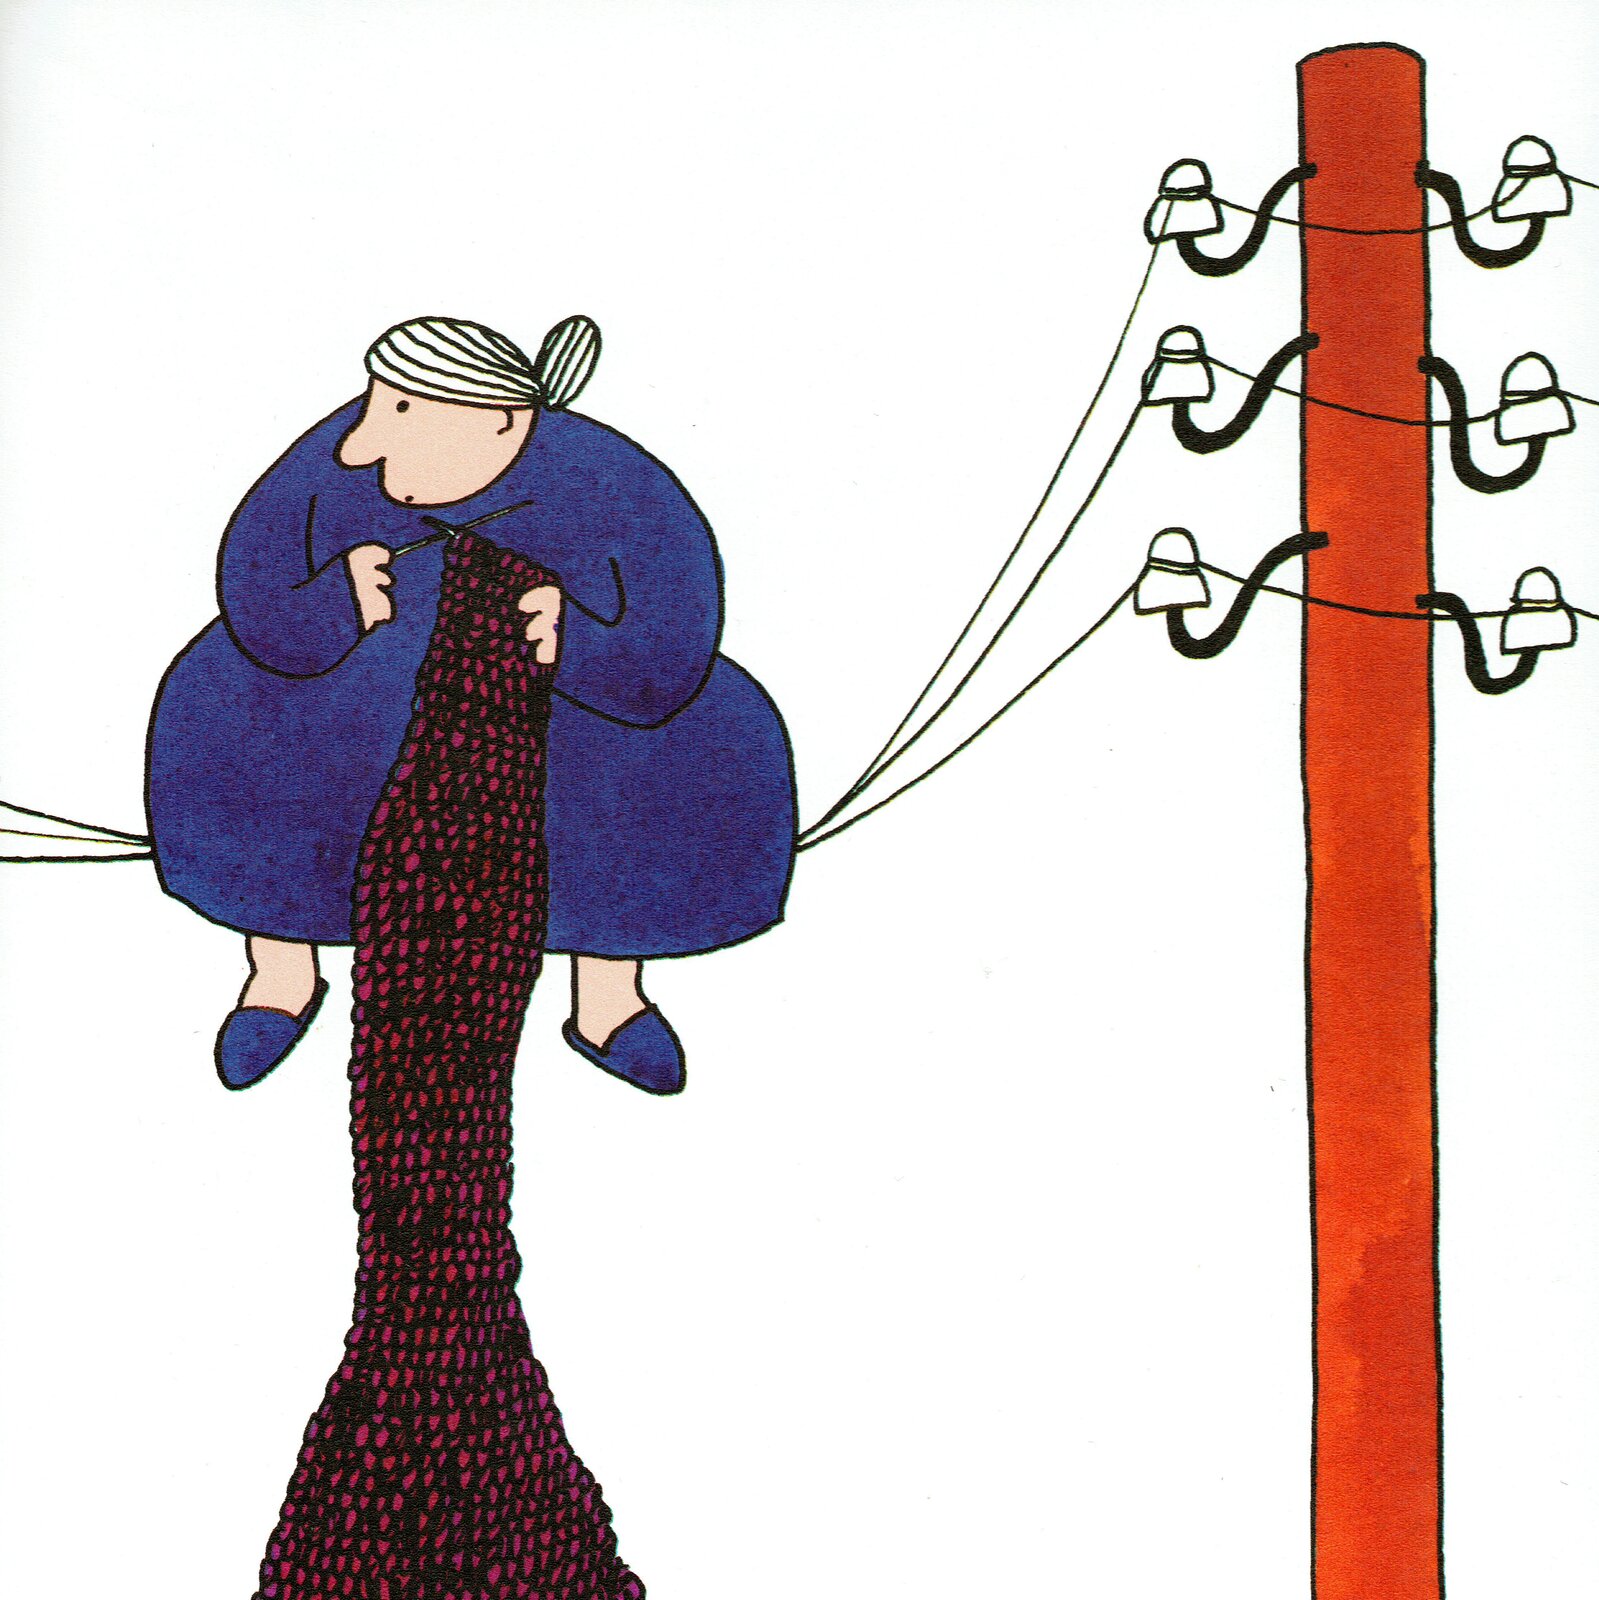 Ilustracja przedstawia grafikę z książki dla dzieci Jana Brzechwy, ukazującą starszą, grubszą kobietę. Postać siedzi na liniach wysokiego napięcia i dzierga szal na drutach.